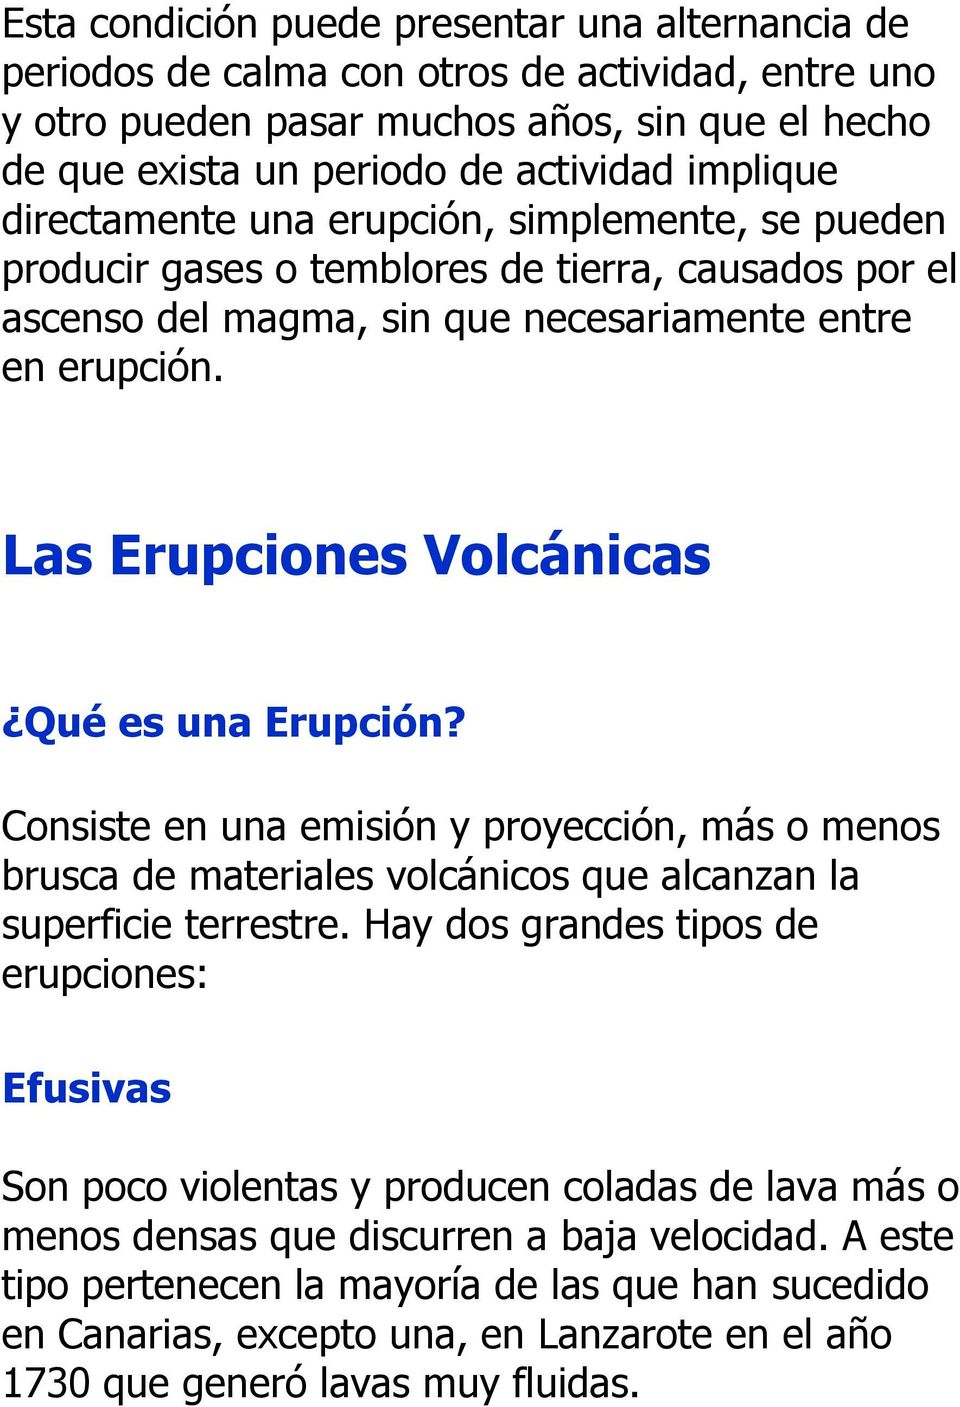 Las Erupciones Volcánicas Qué es una Erupción? Consiste en una emisión y proyección, más o menos brusca de materiales volcánicos que alcanzan la superficie terrestre.